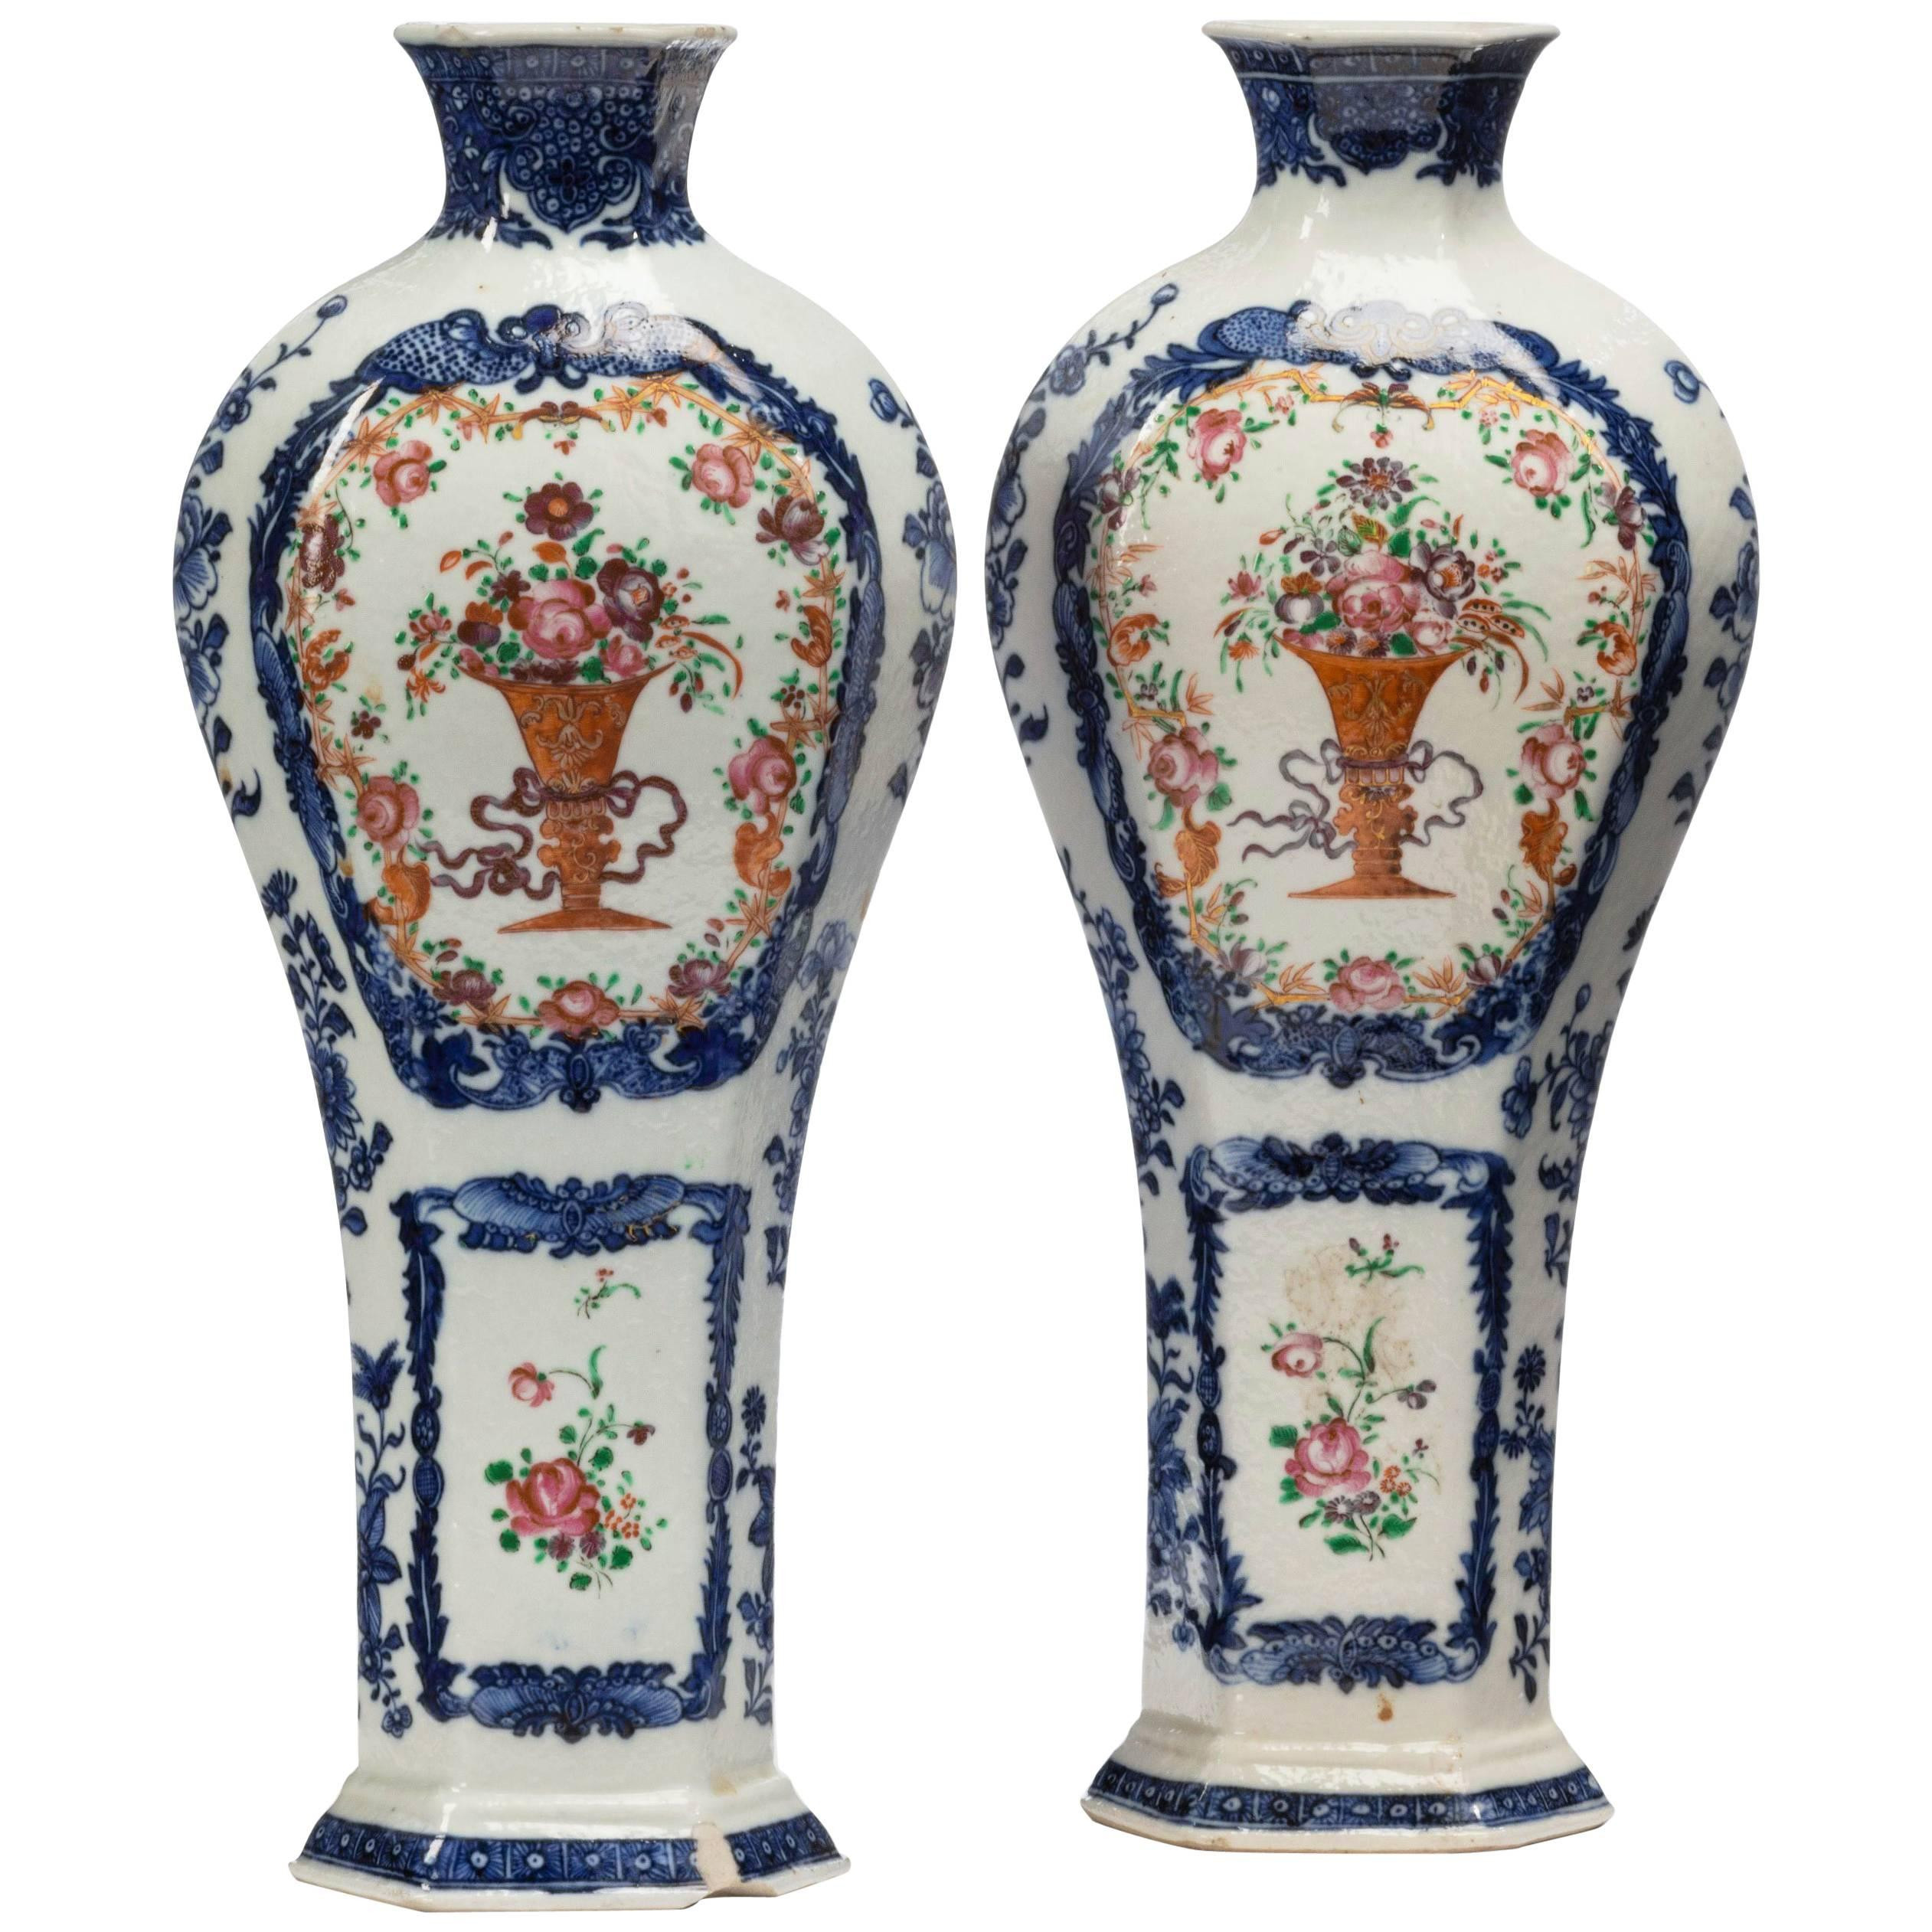 19 Unique Blue White Porcelain Vase 2022 free download blue white porcelain vase of pair of qianlong period vases for sale at 1stdibs in 10738003 master